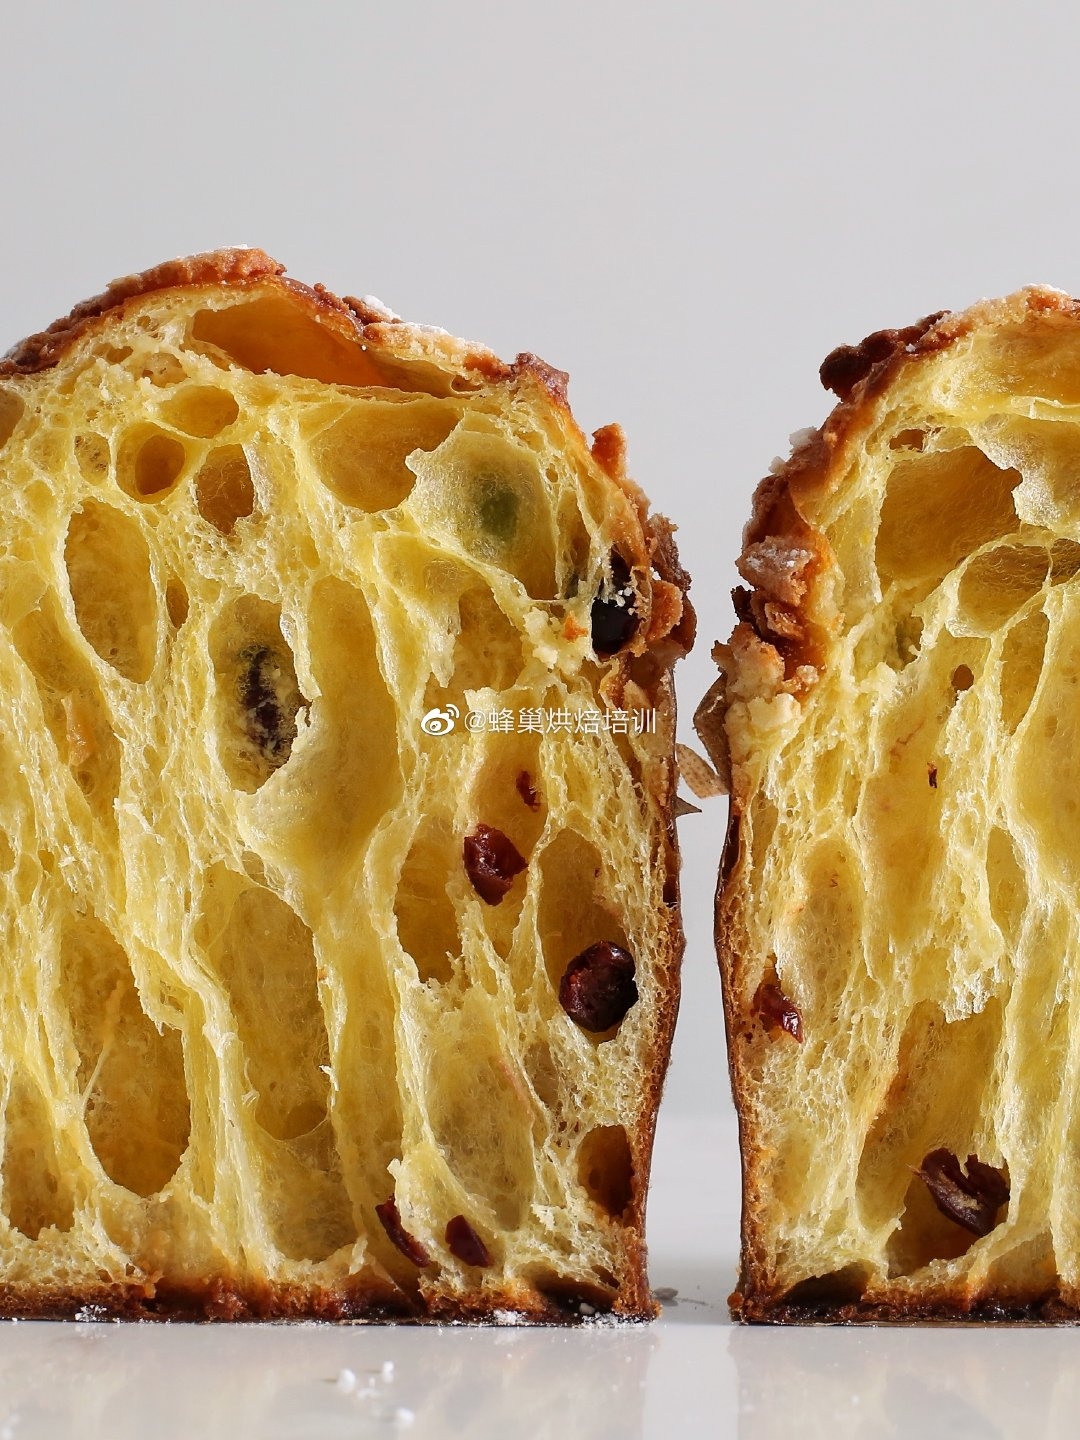 潘娜托尼Panettone意大利水果面包圣诞面包的做法